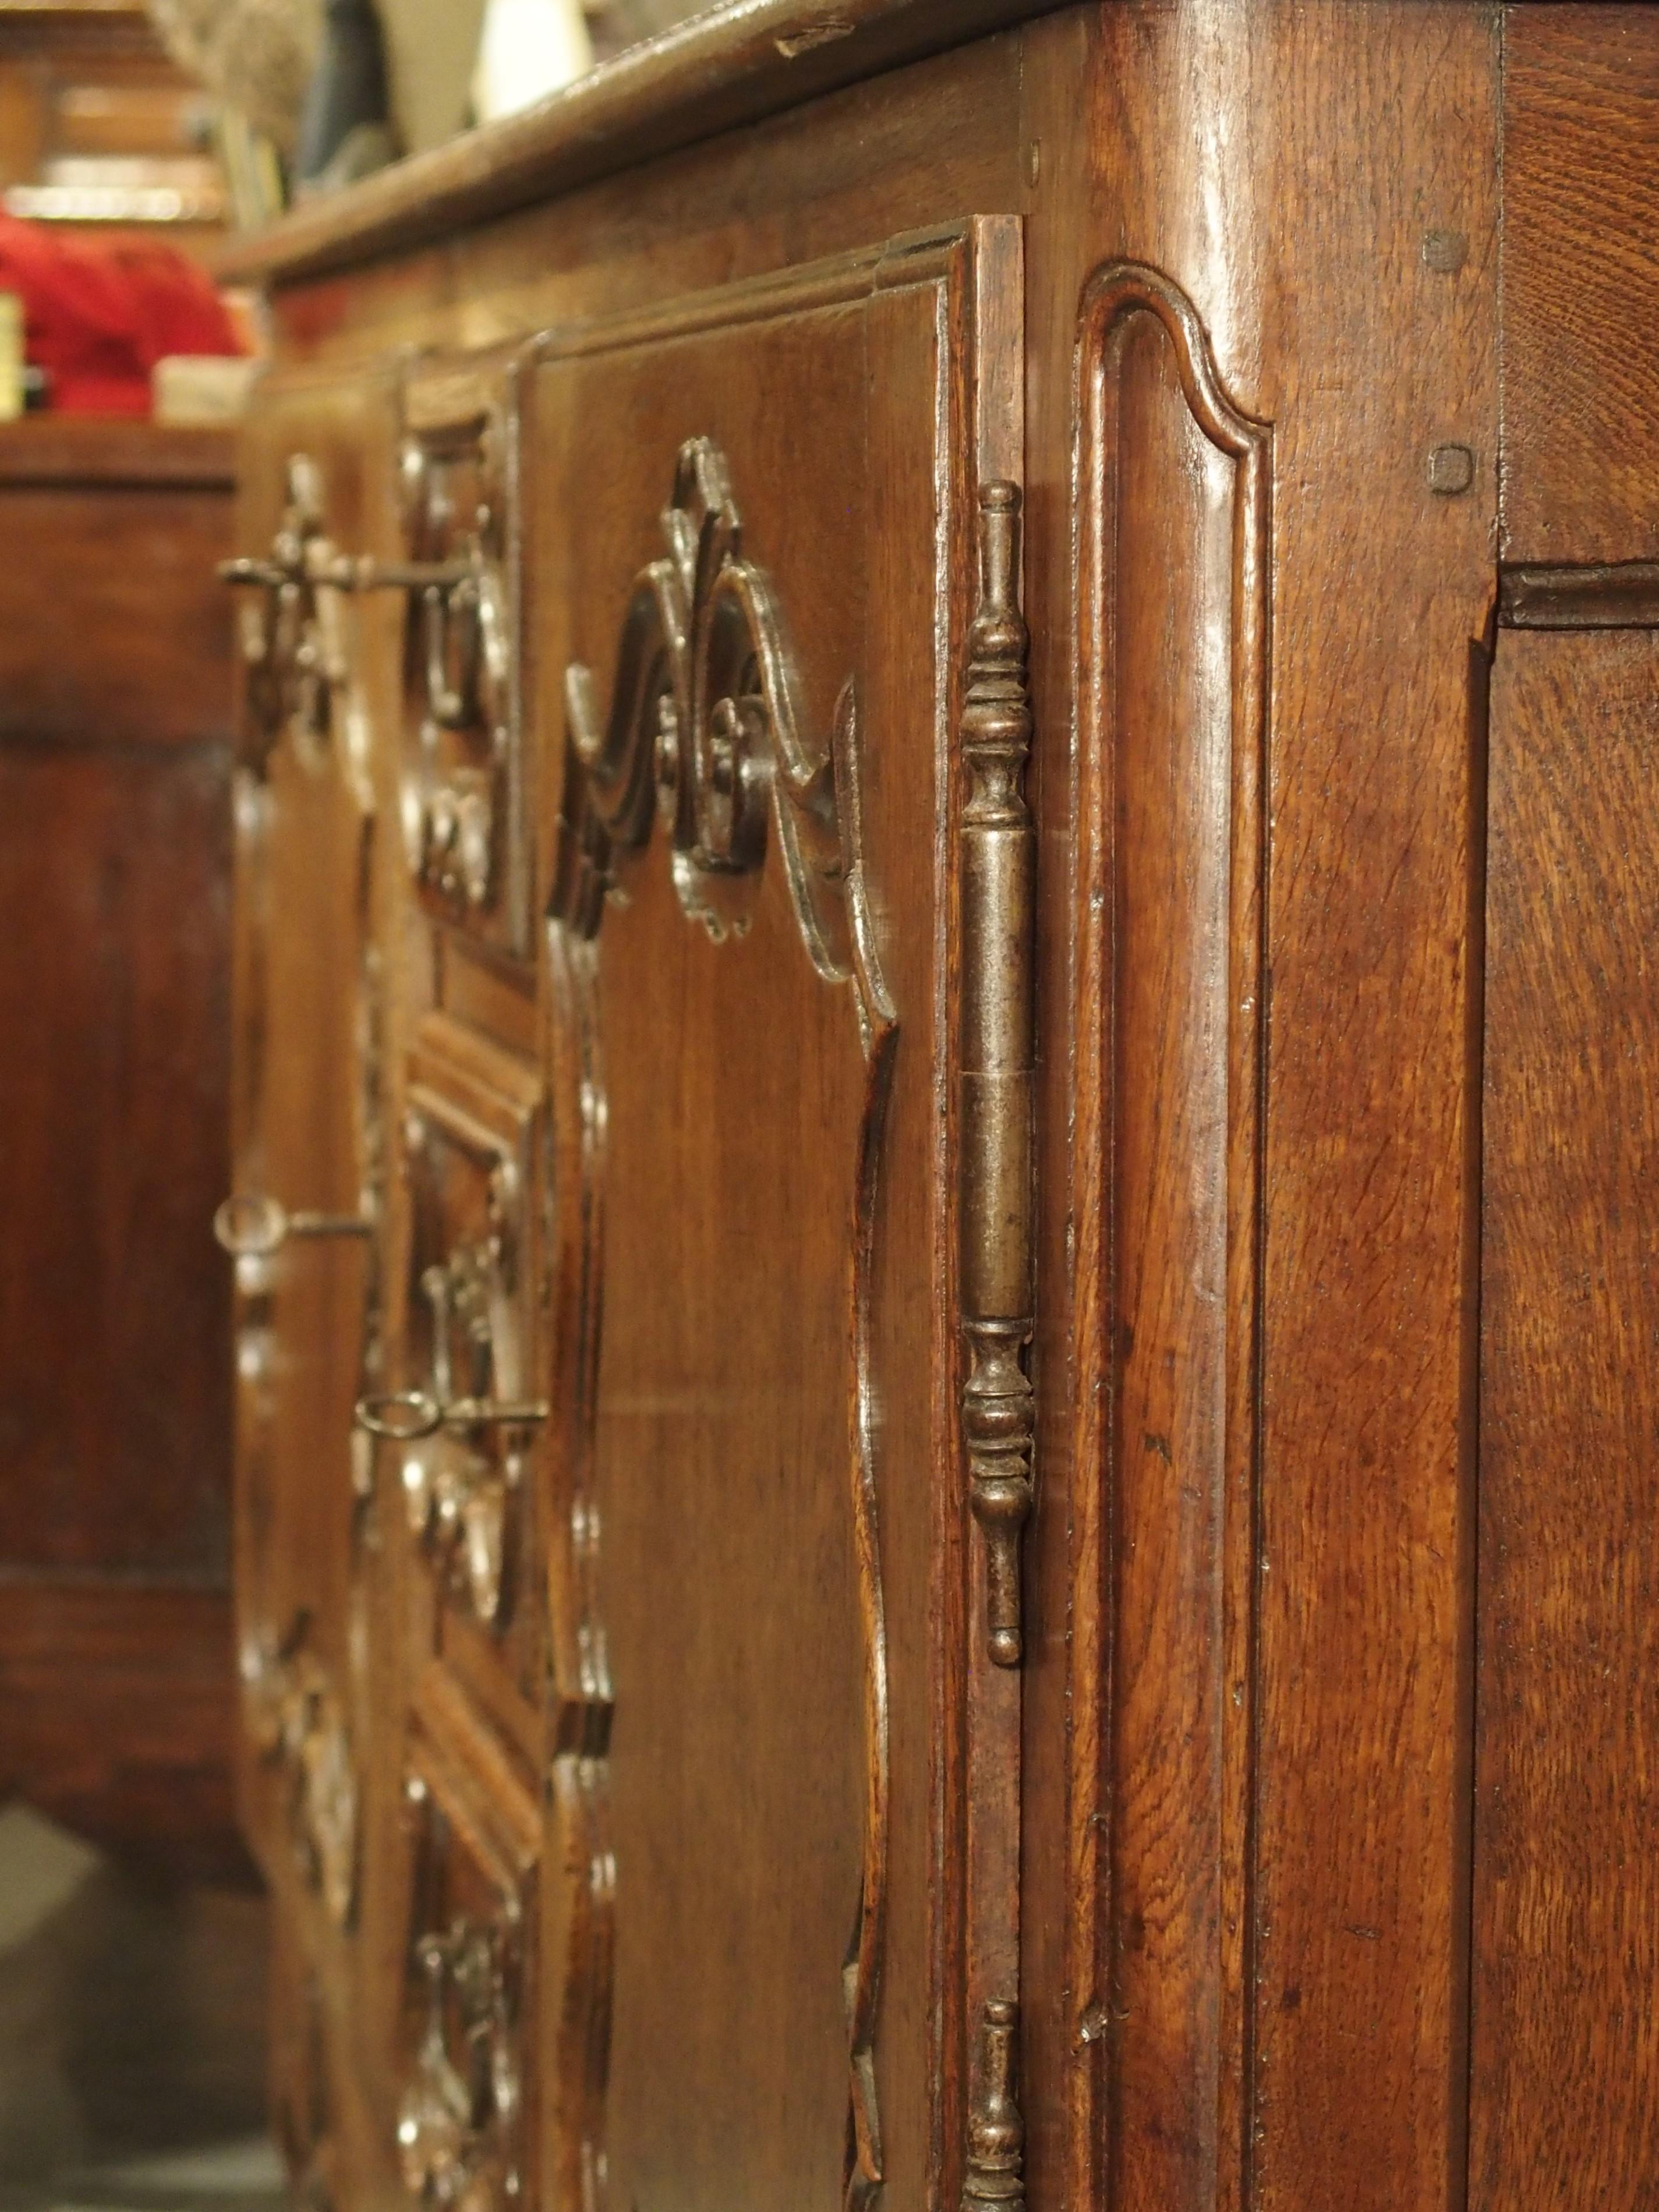 Sculpté à la main en France au cours des années 1700, cet étonnant buffet en chêne comporte deux portes sur charnières en fer séparées par trois tiroirs empilés verticalement. Cette orientation se retrouve souvent dans les buffets produits dans la